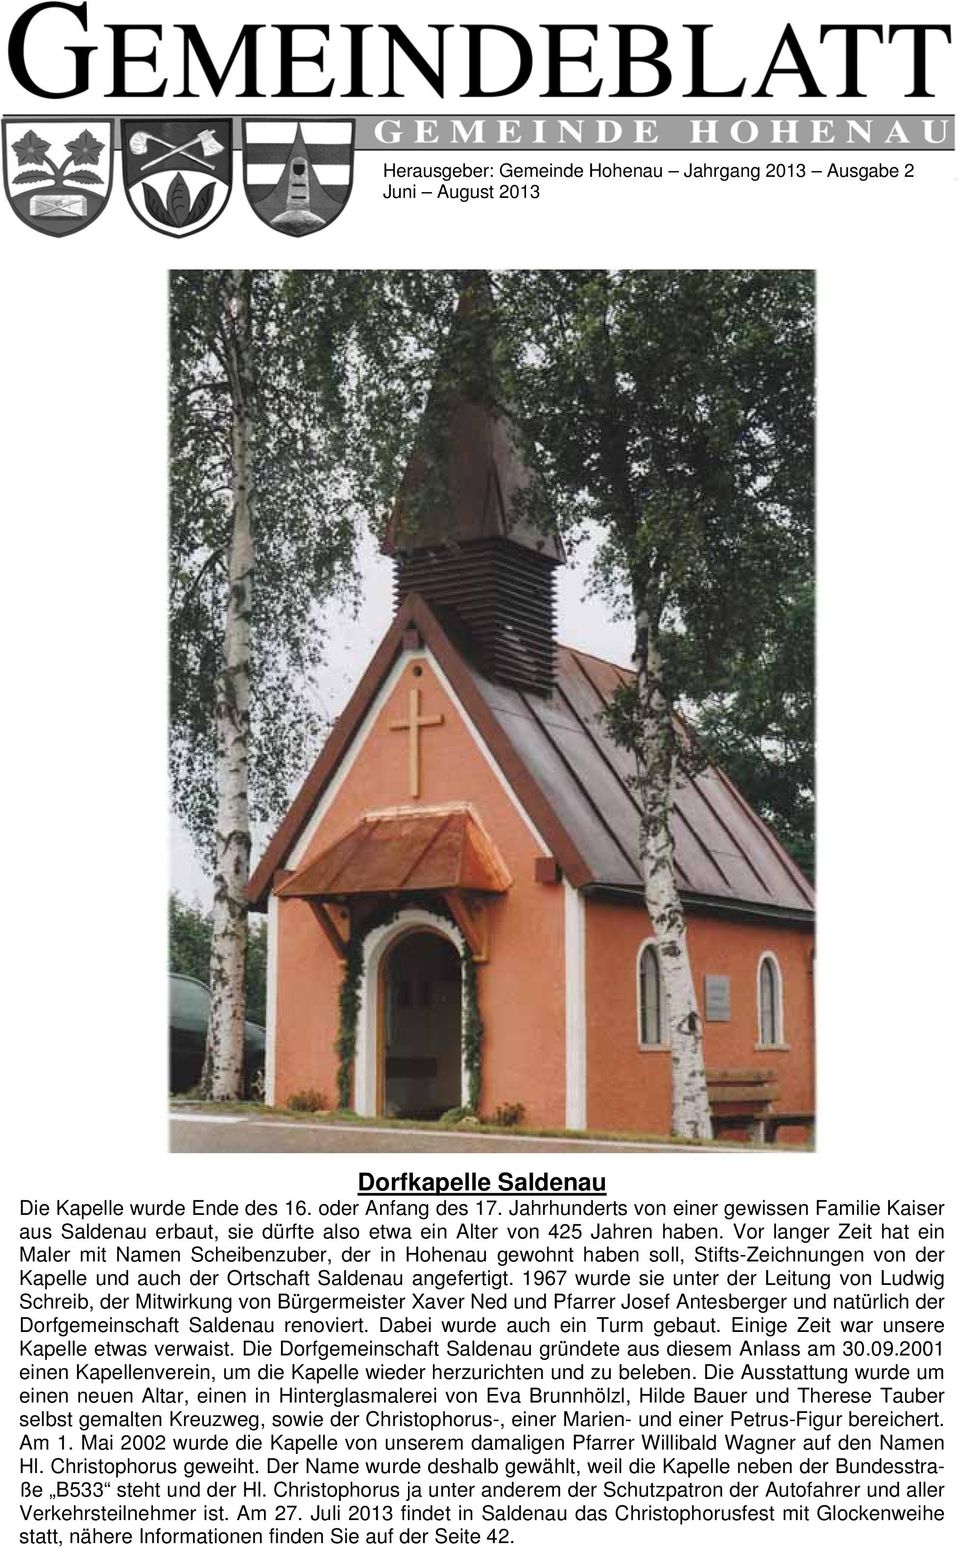 Vor langer Zeit hat ein Maler mit Namen Scheibenzuber, der in Hohenau gewohnt haben soll, Stifts-Zeichnungen von der Kapelle und auch der Ortschaft Saldenau angefertigt.